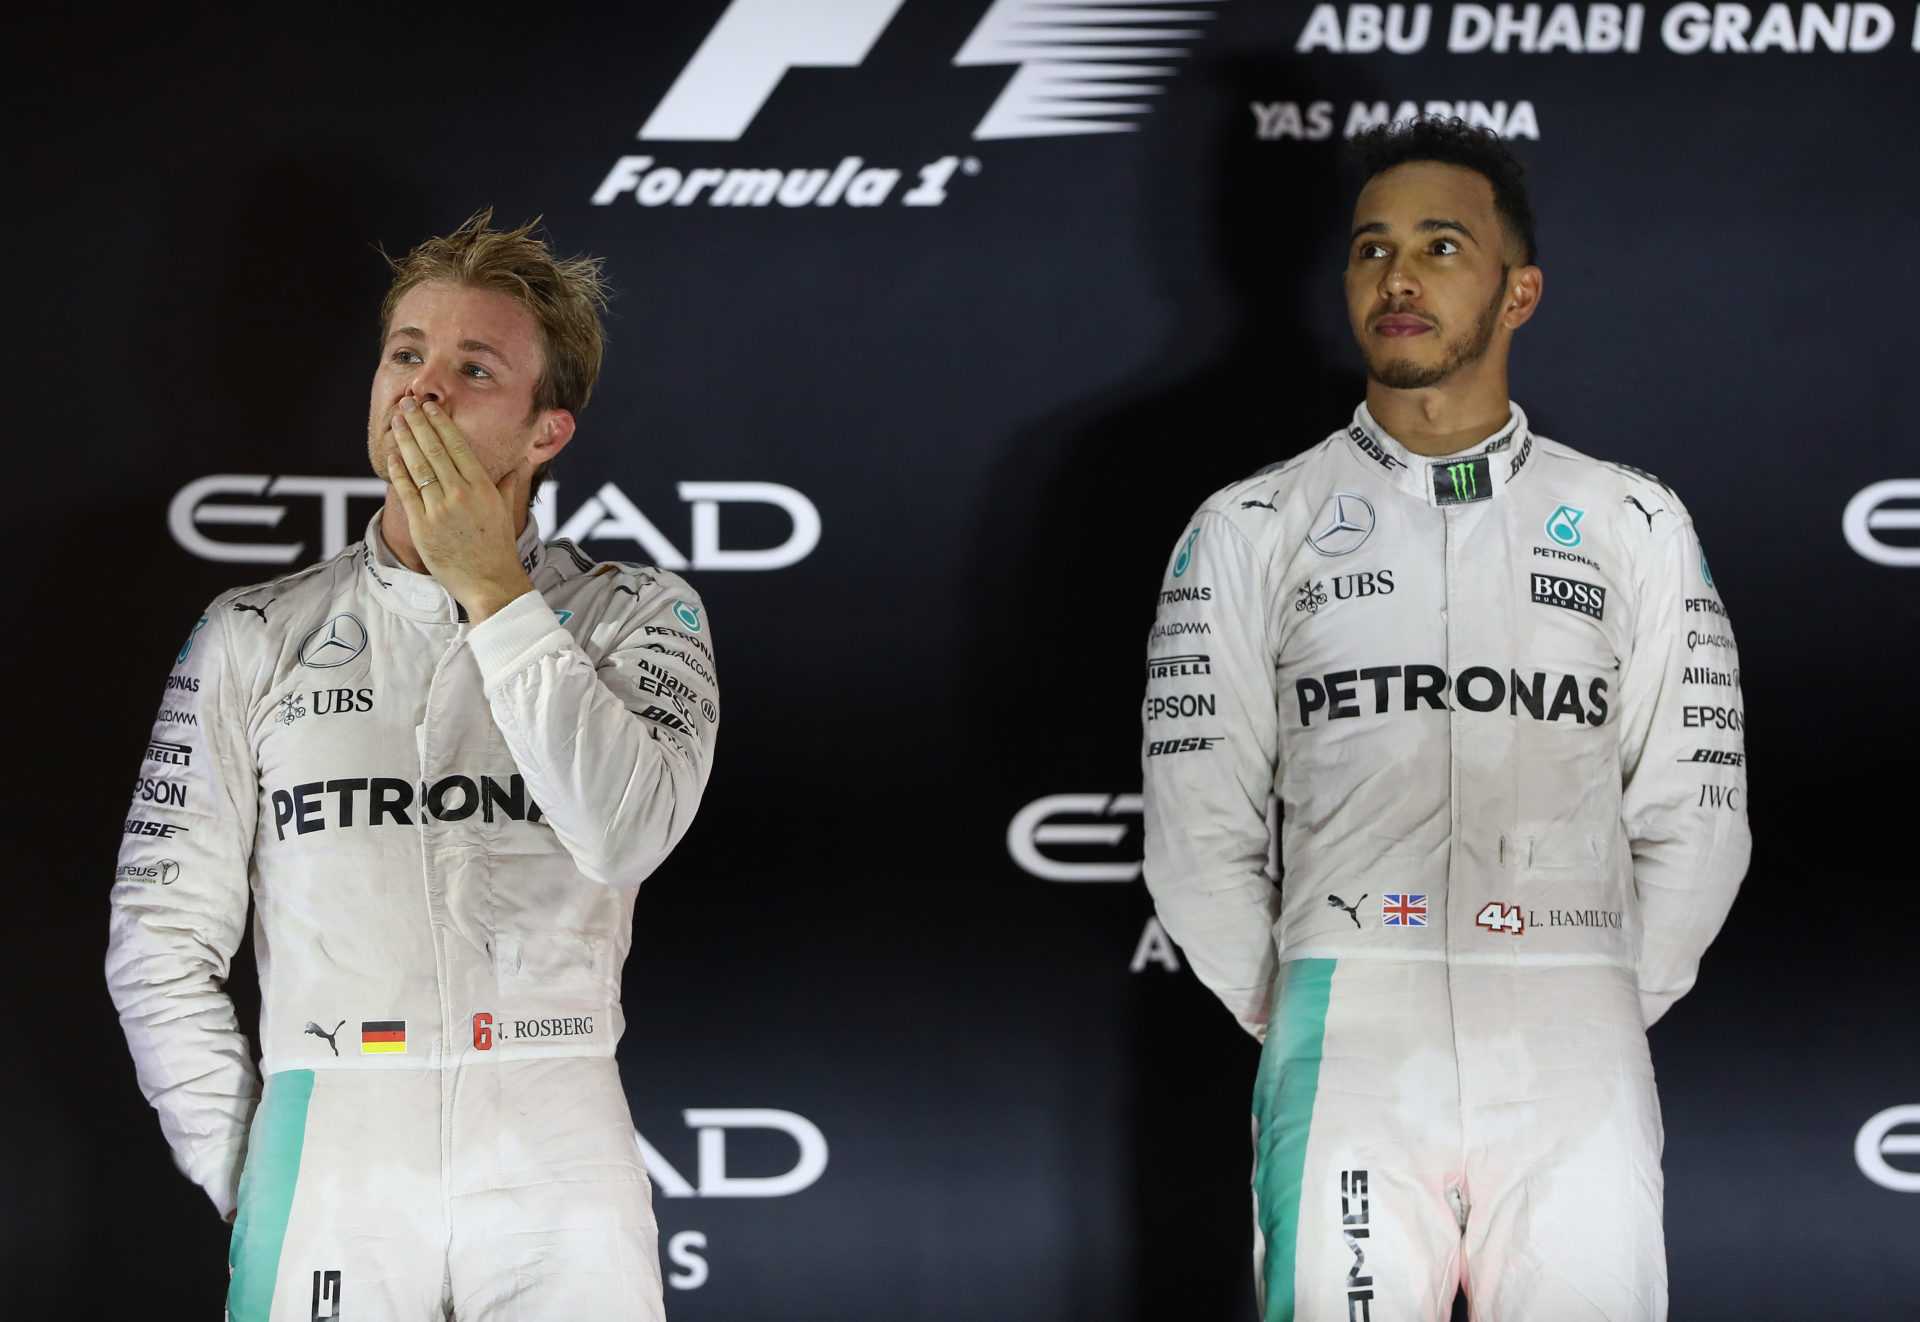 Lewis Hamilton et Nico Rosberg de Mercedes sur le podium après le GP d'Abu Dhabi